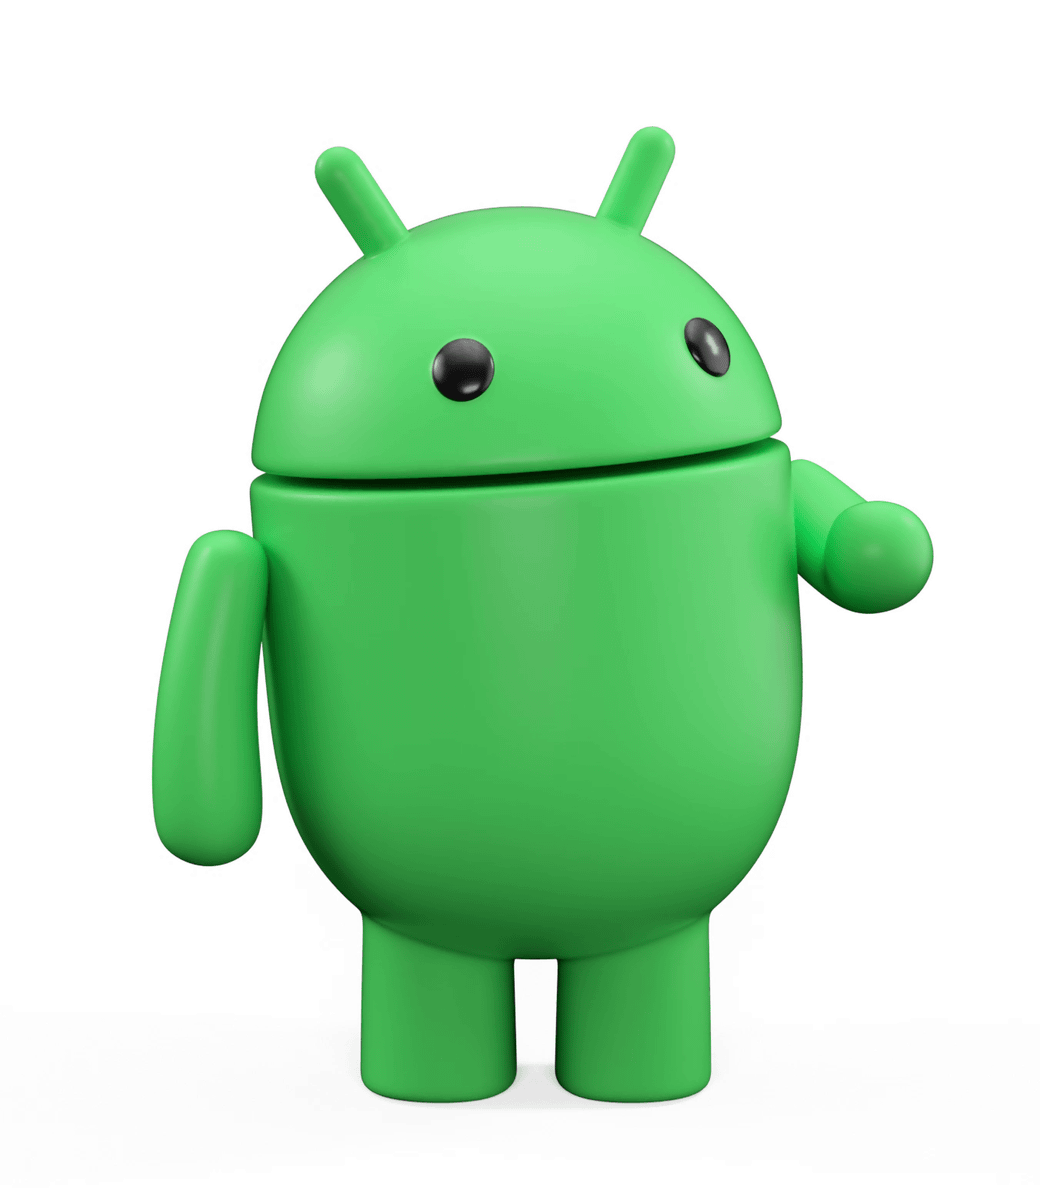 Androidに新機能追加＆ロゴやドロイドくんの外観変更 - GIGAZINE